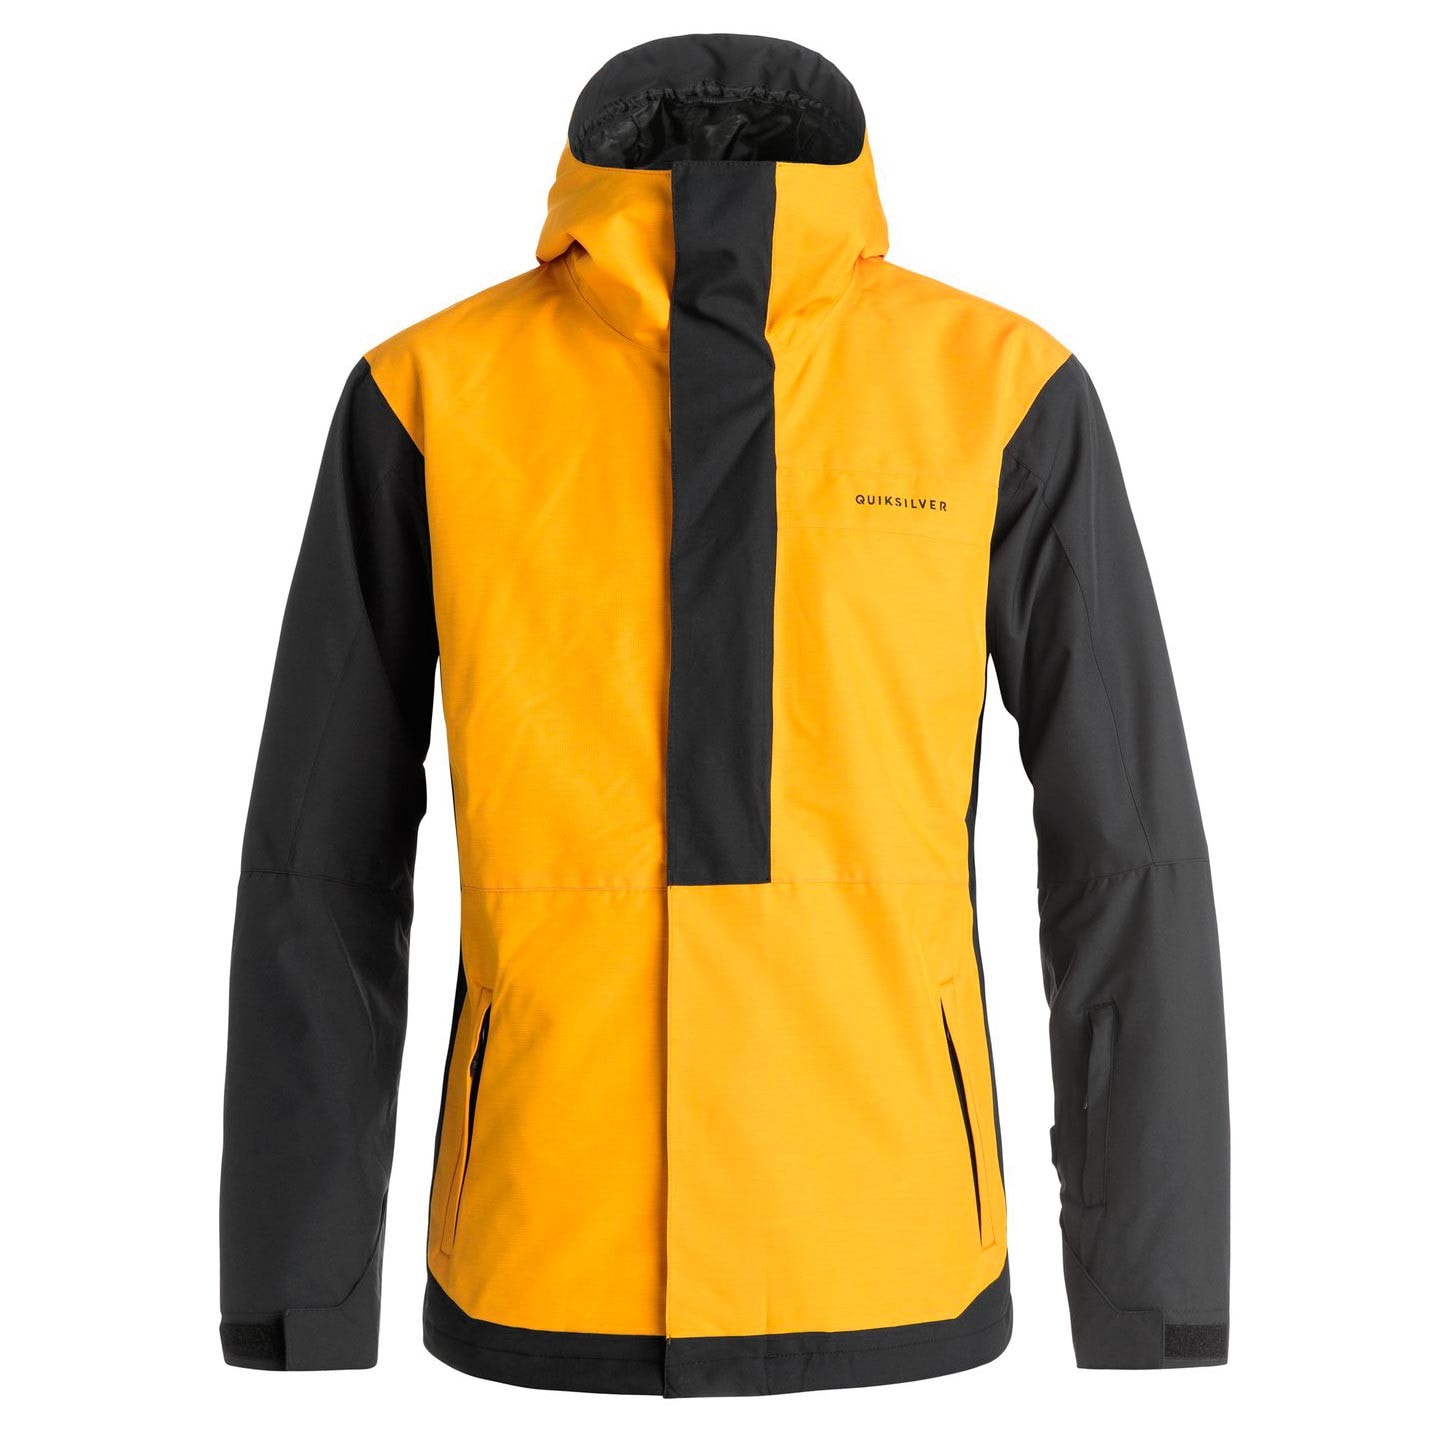 Embryo Groen verdiepen Snowboard Jacket Quiksilver Ambition cadmium yellow | Snowboard Zezula